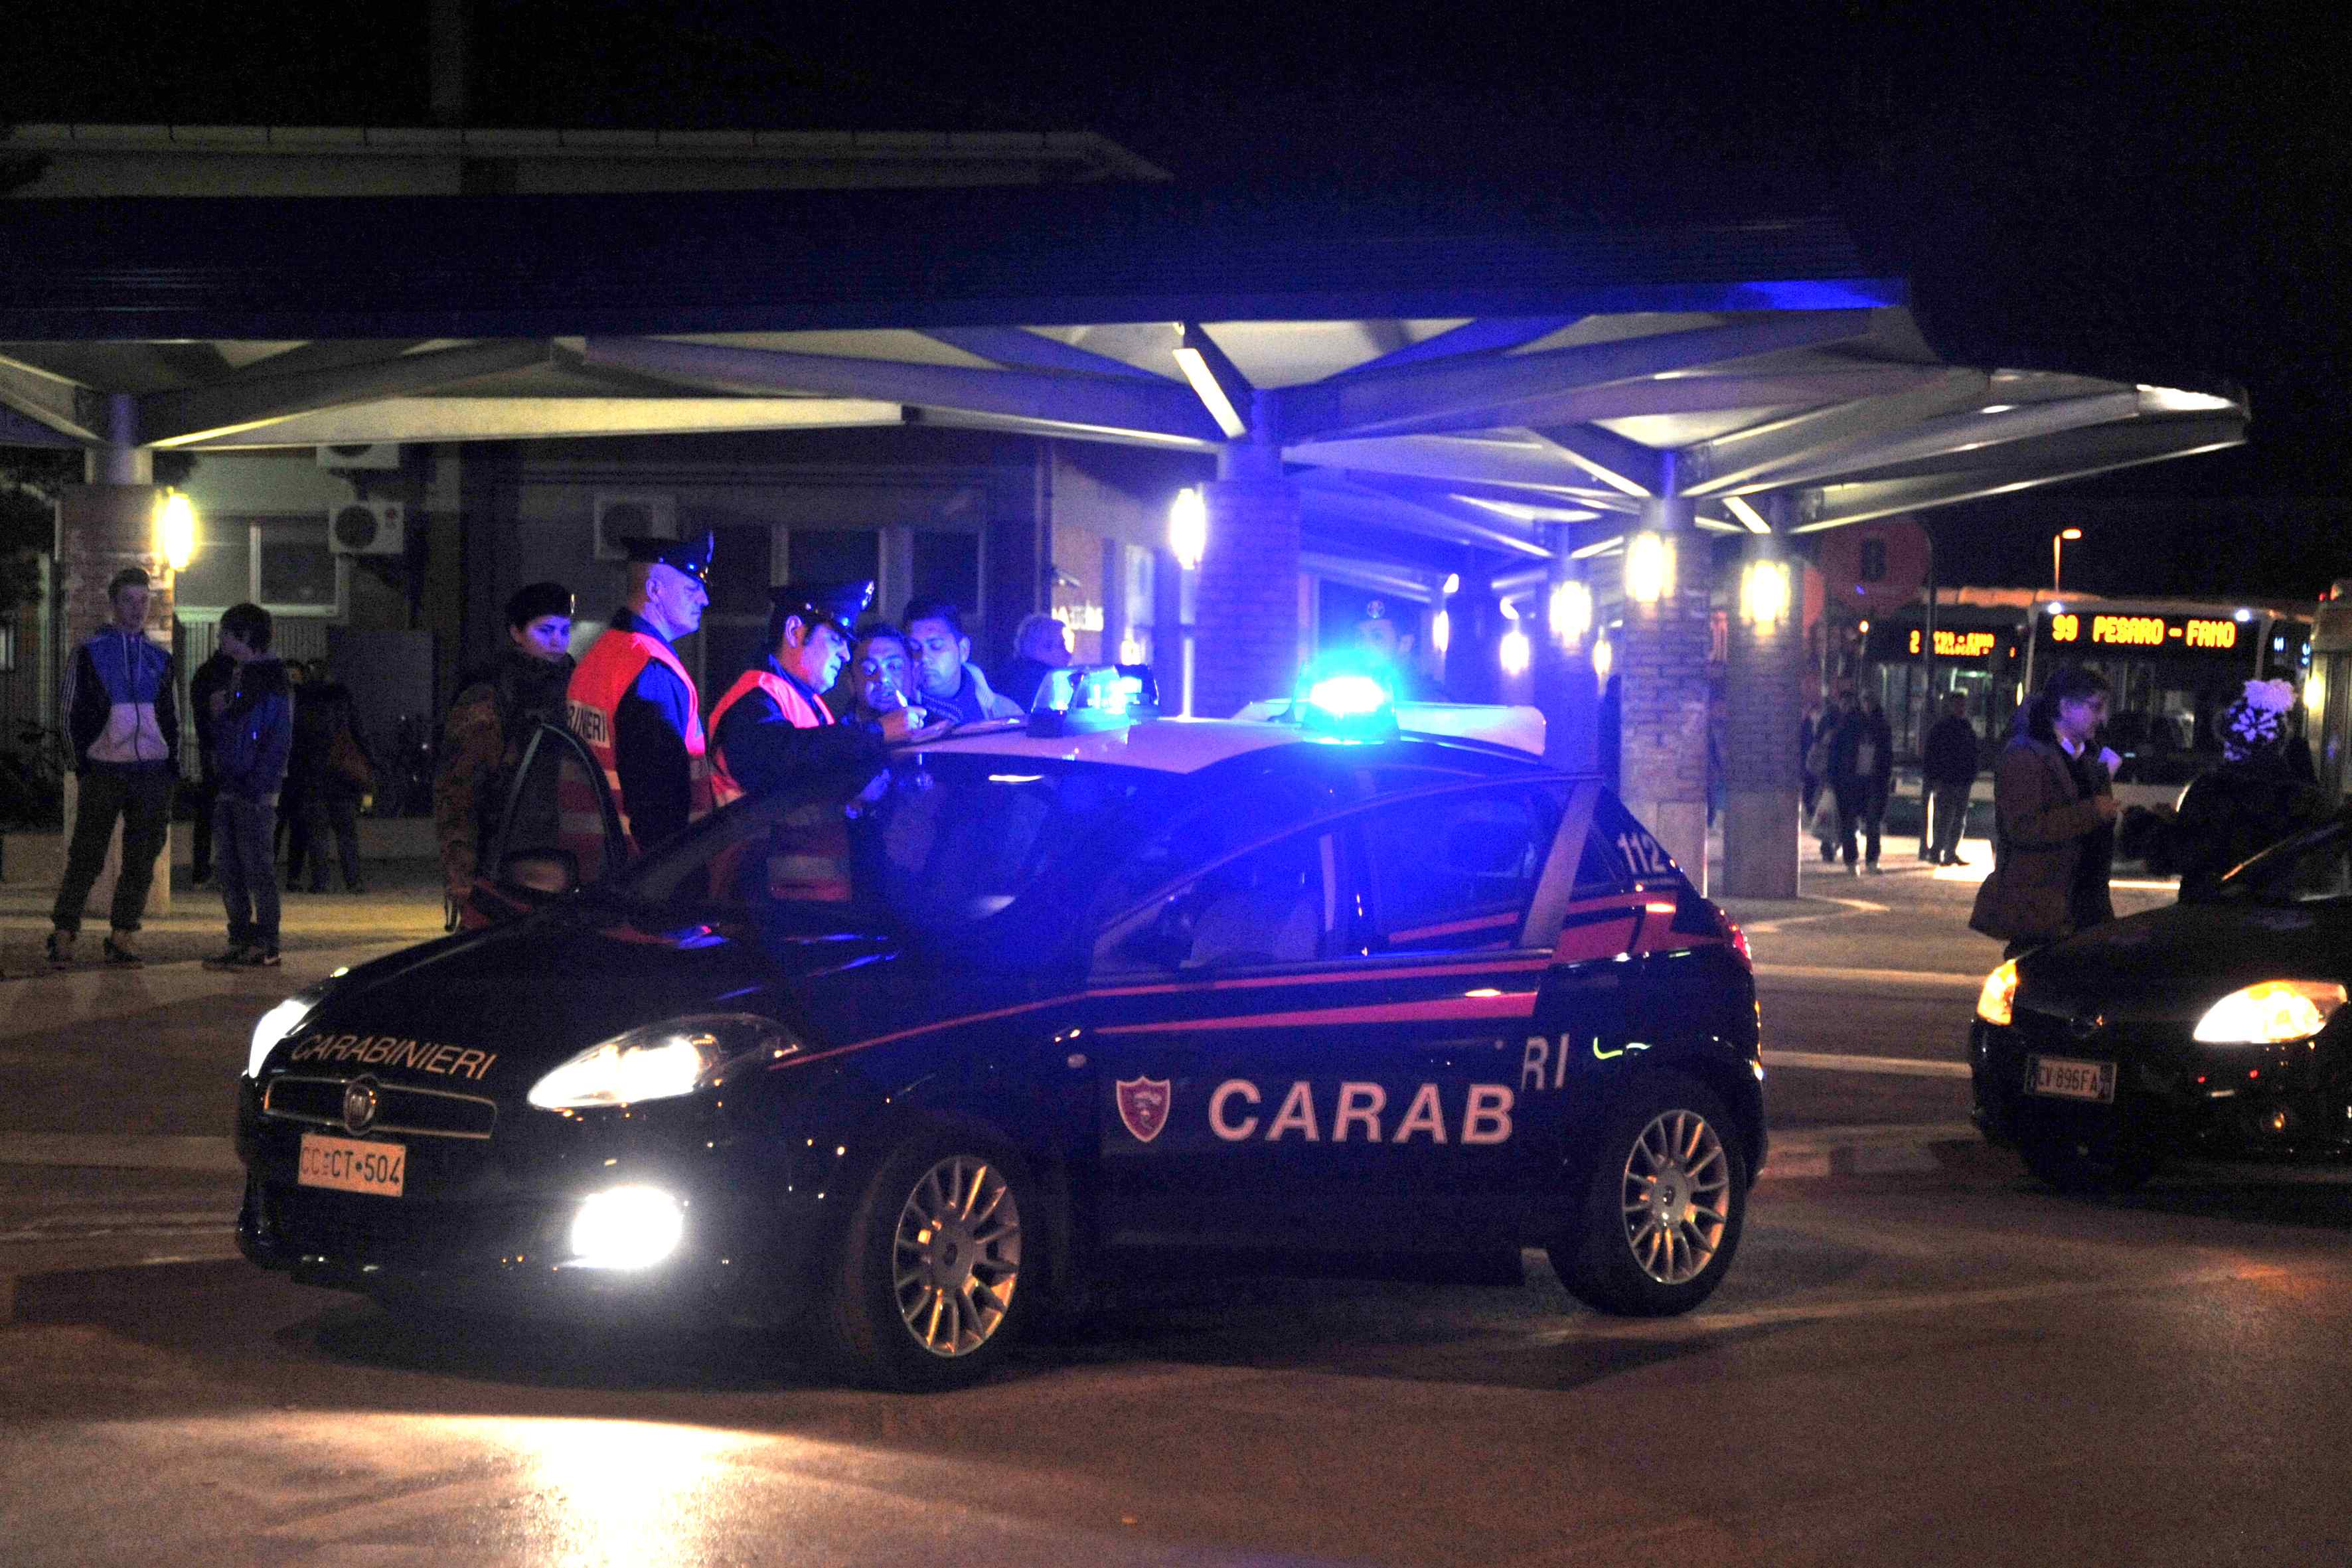 Estorsione truffa, arrestato dai carabinieri un uomo già ricercato in Romania